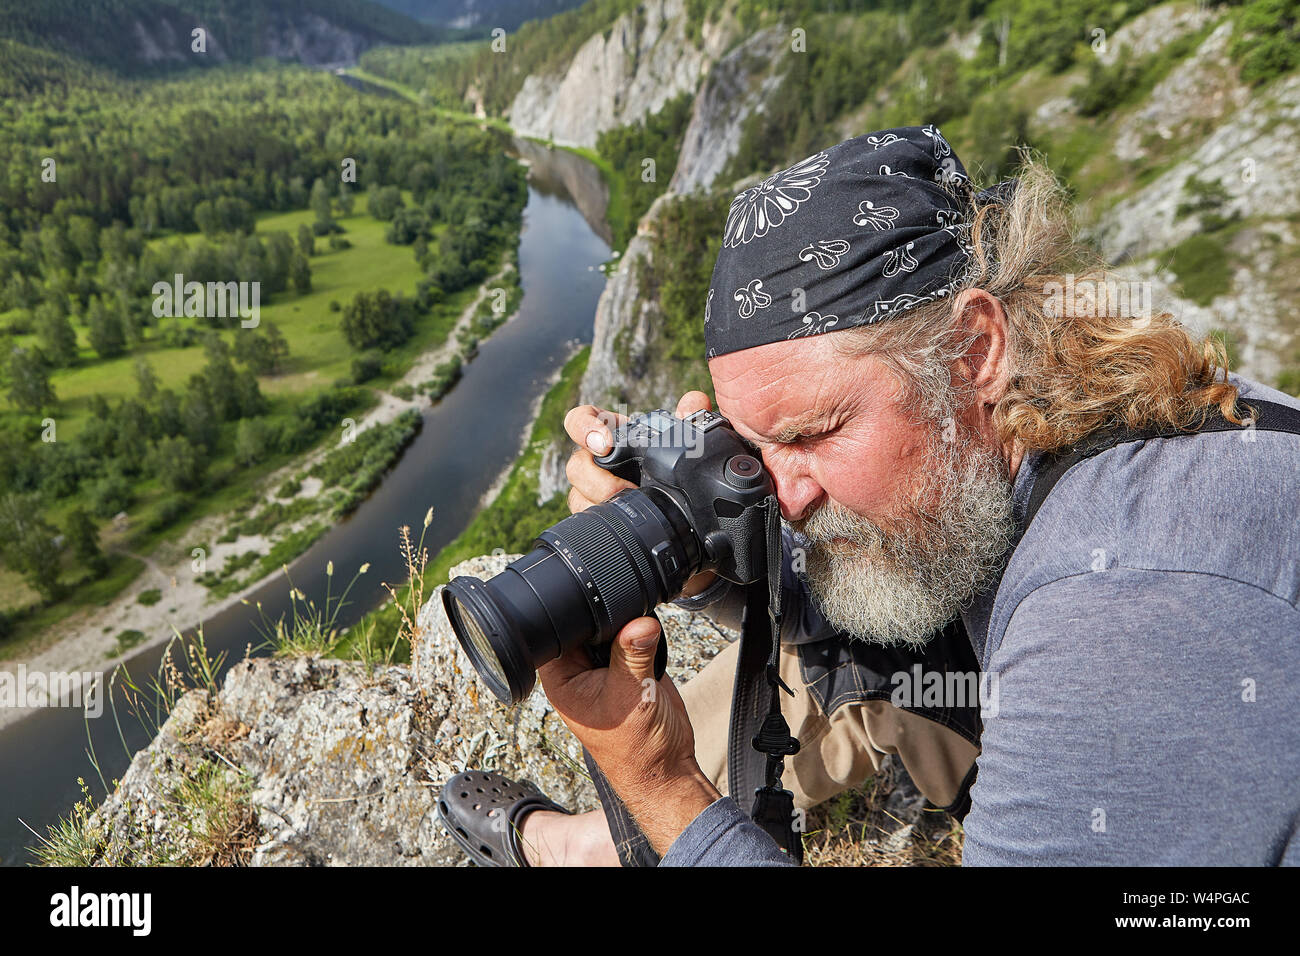 Landschaft Fotograf nimmt Bilder der Natur in einer felsigen Gegend, kletterte er auf die Spitze eines Berges oberhalb einer ruhigen Fluss. Stockfoto